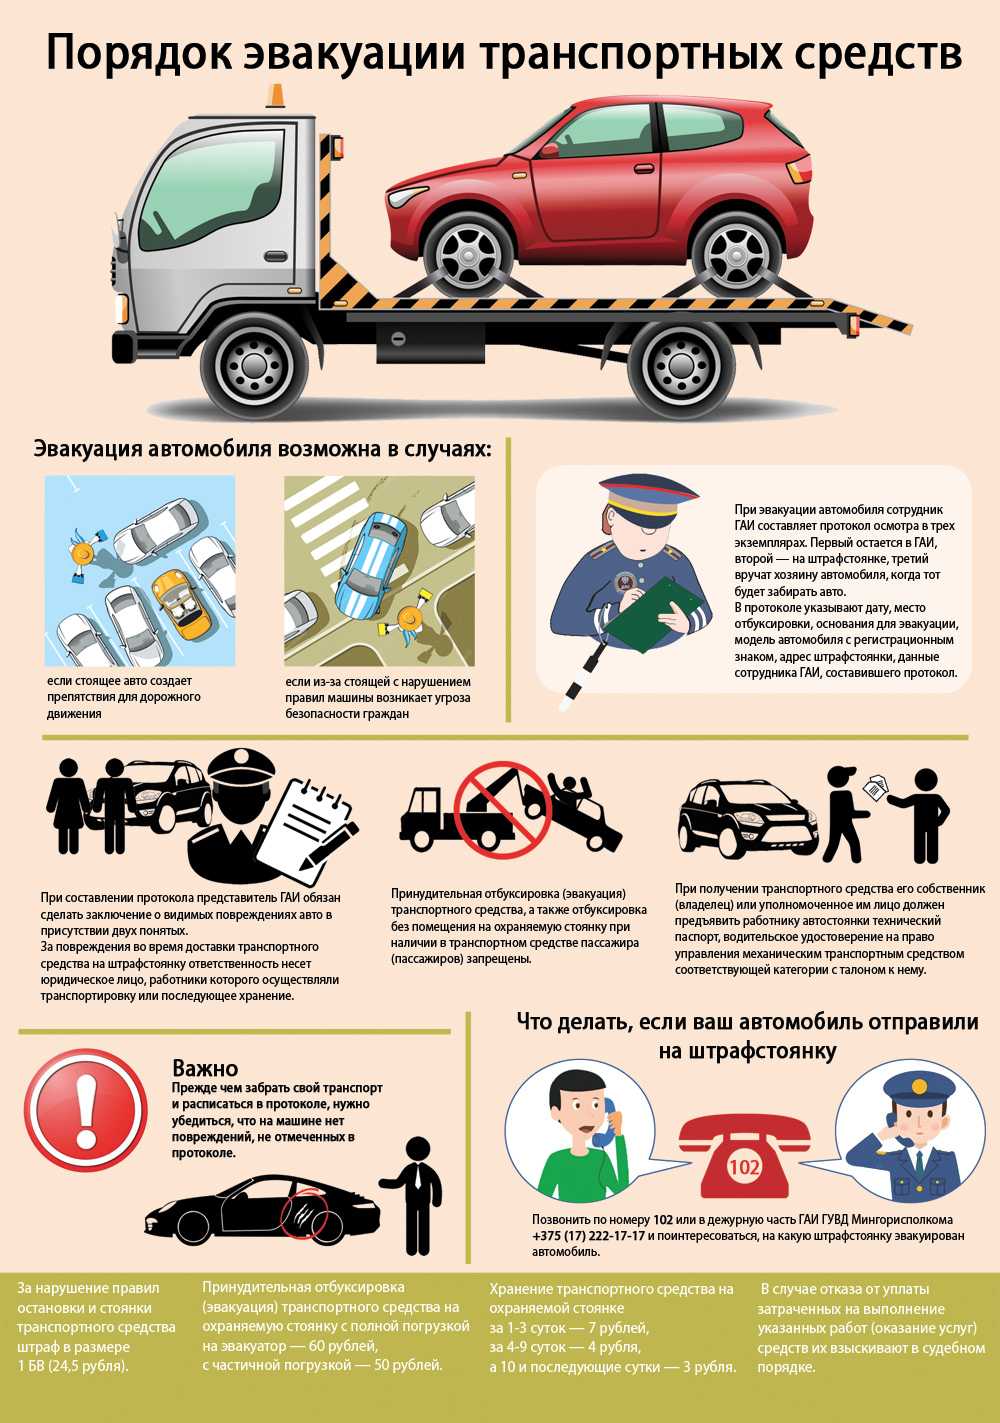 Правила эвакуации автомобилей на штрафстоянку в 2020 году